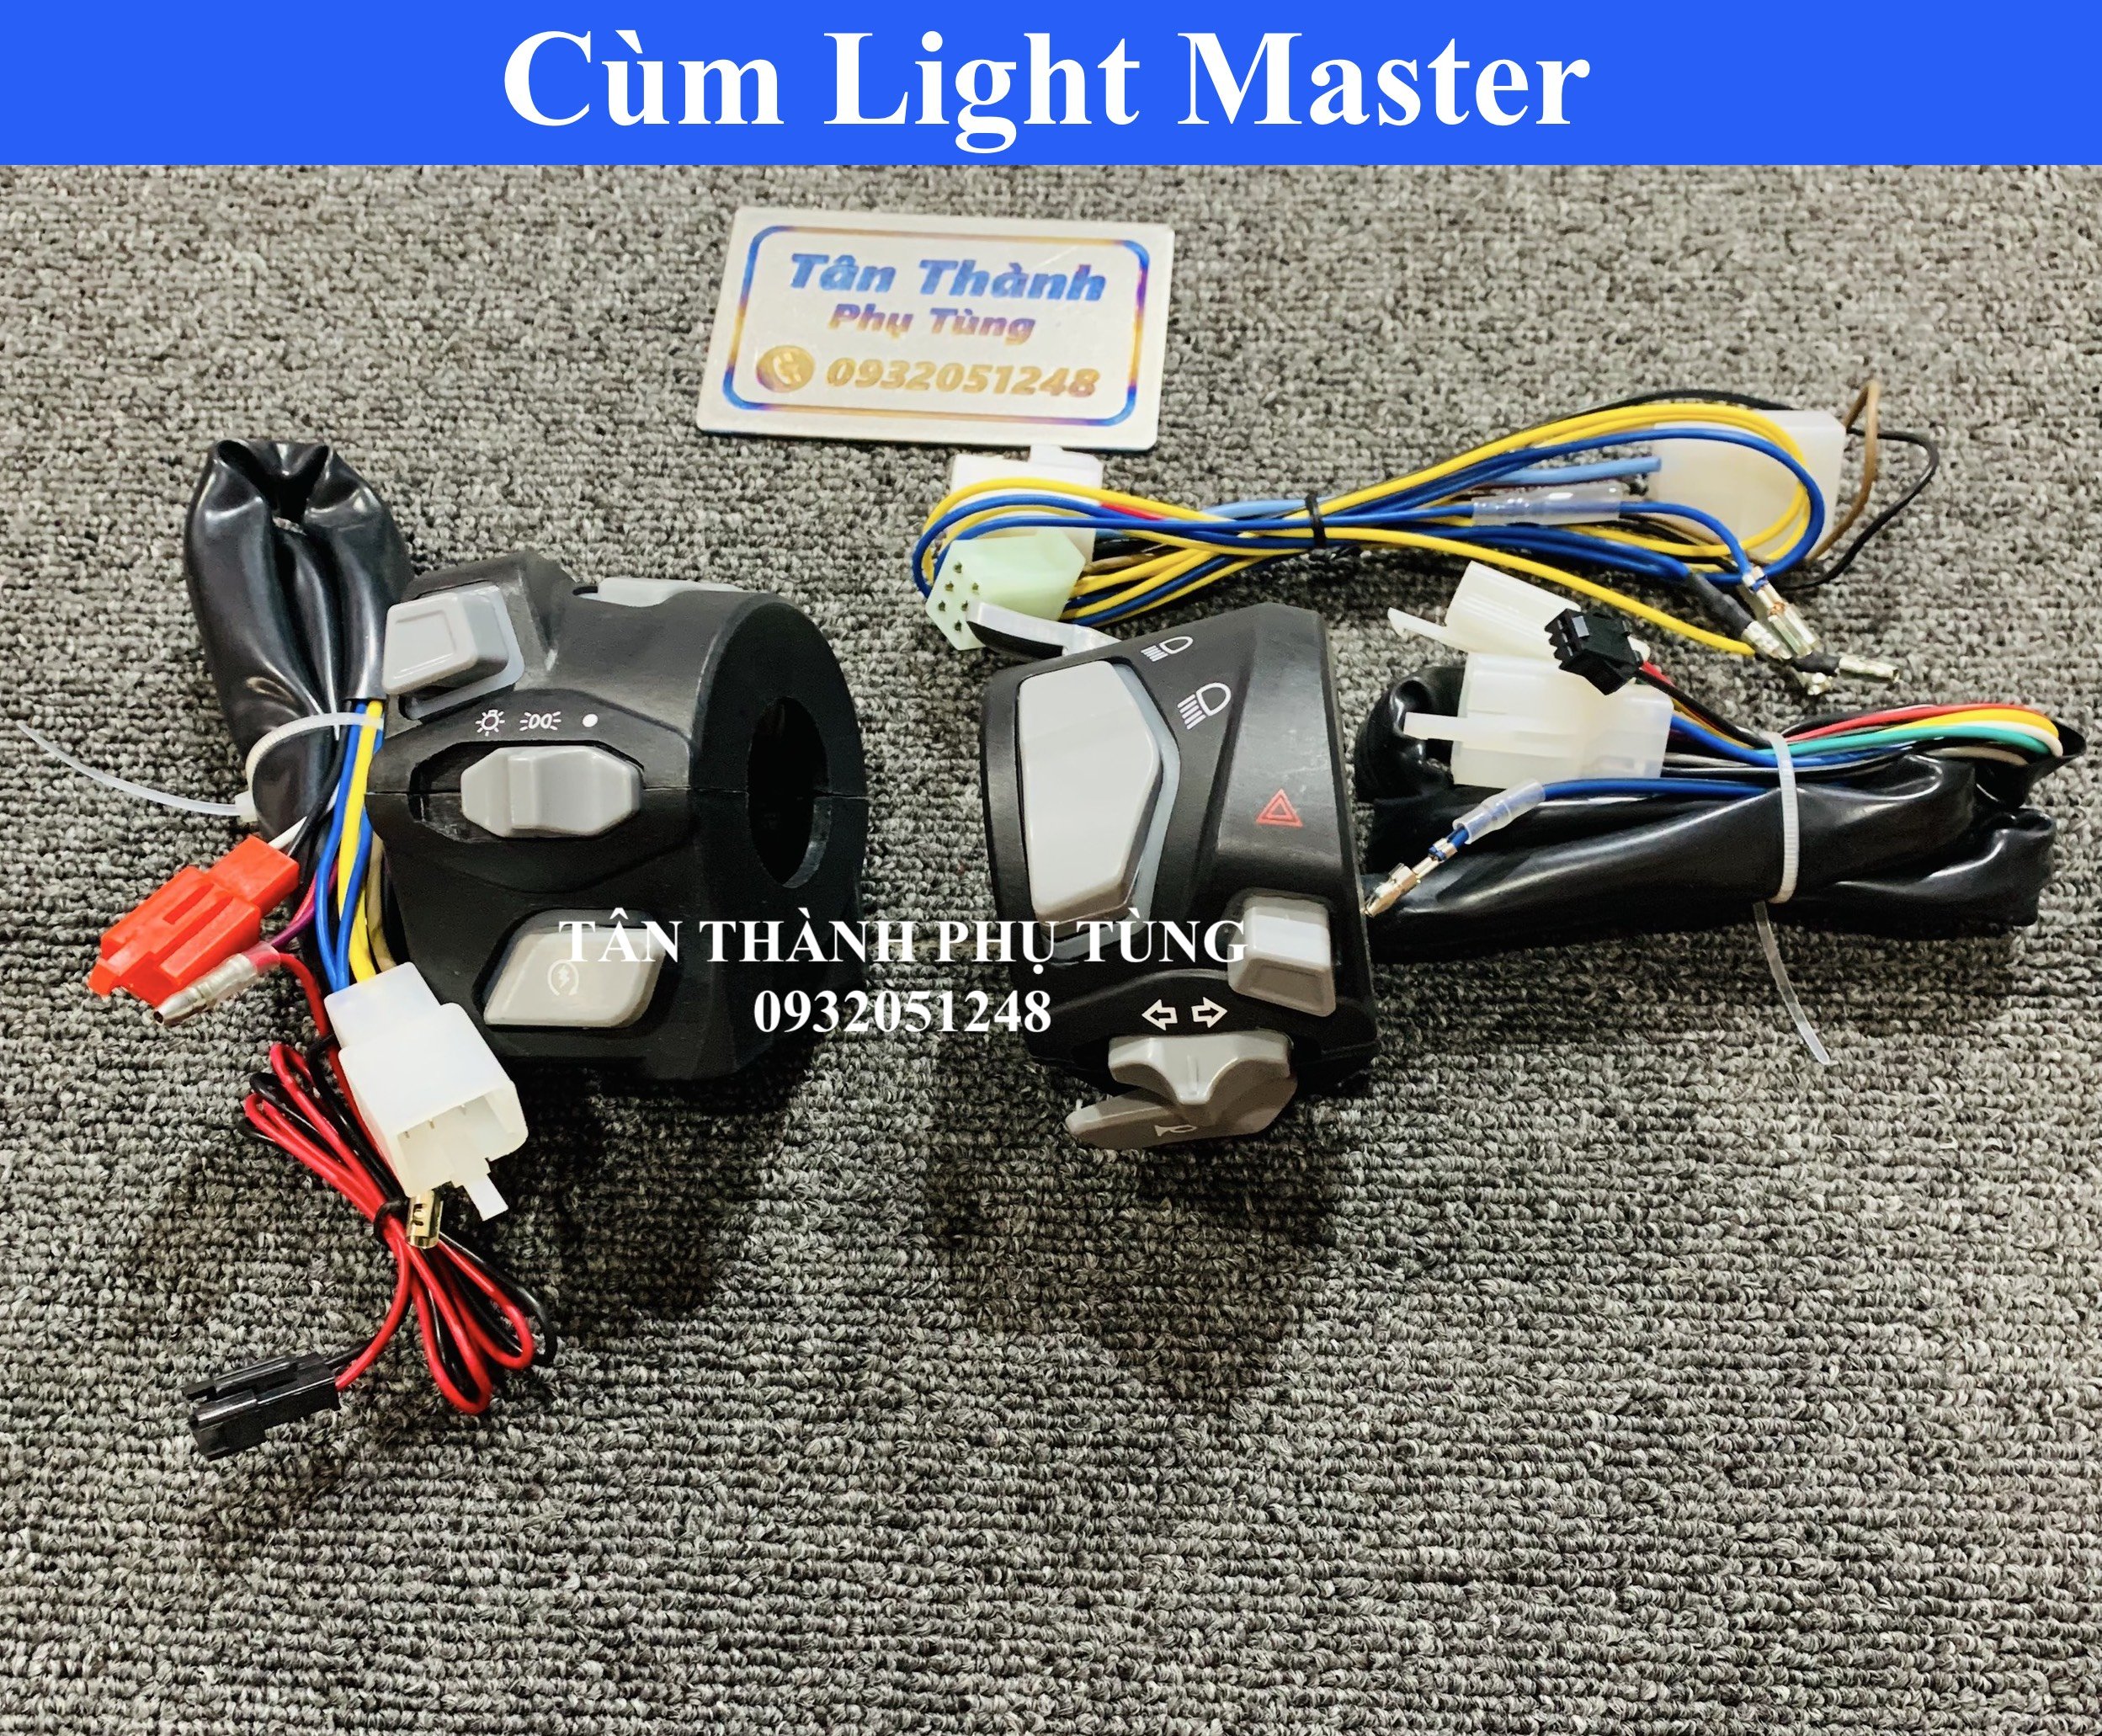 Cùm Light Master đèn xanh gắn dành cho : Vario, Sonic, Exciter 150, Raider FI, Winner